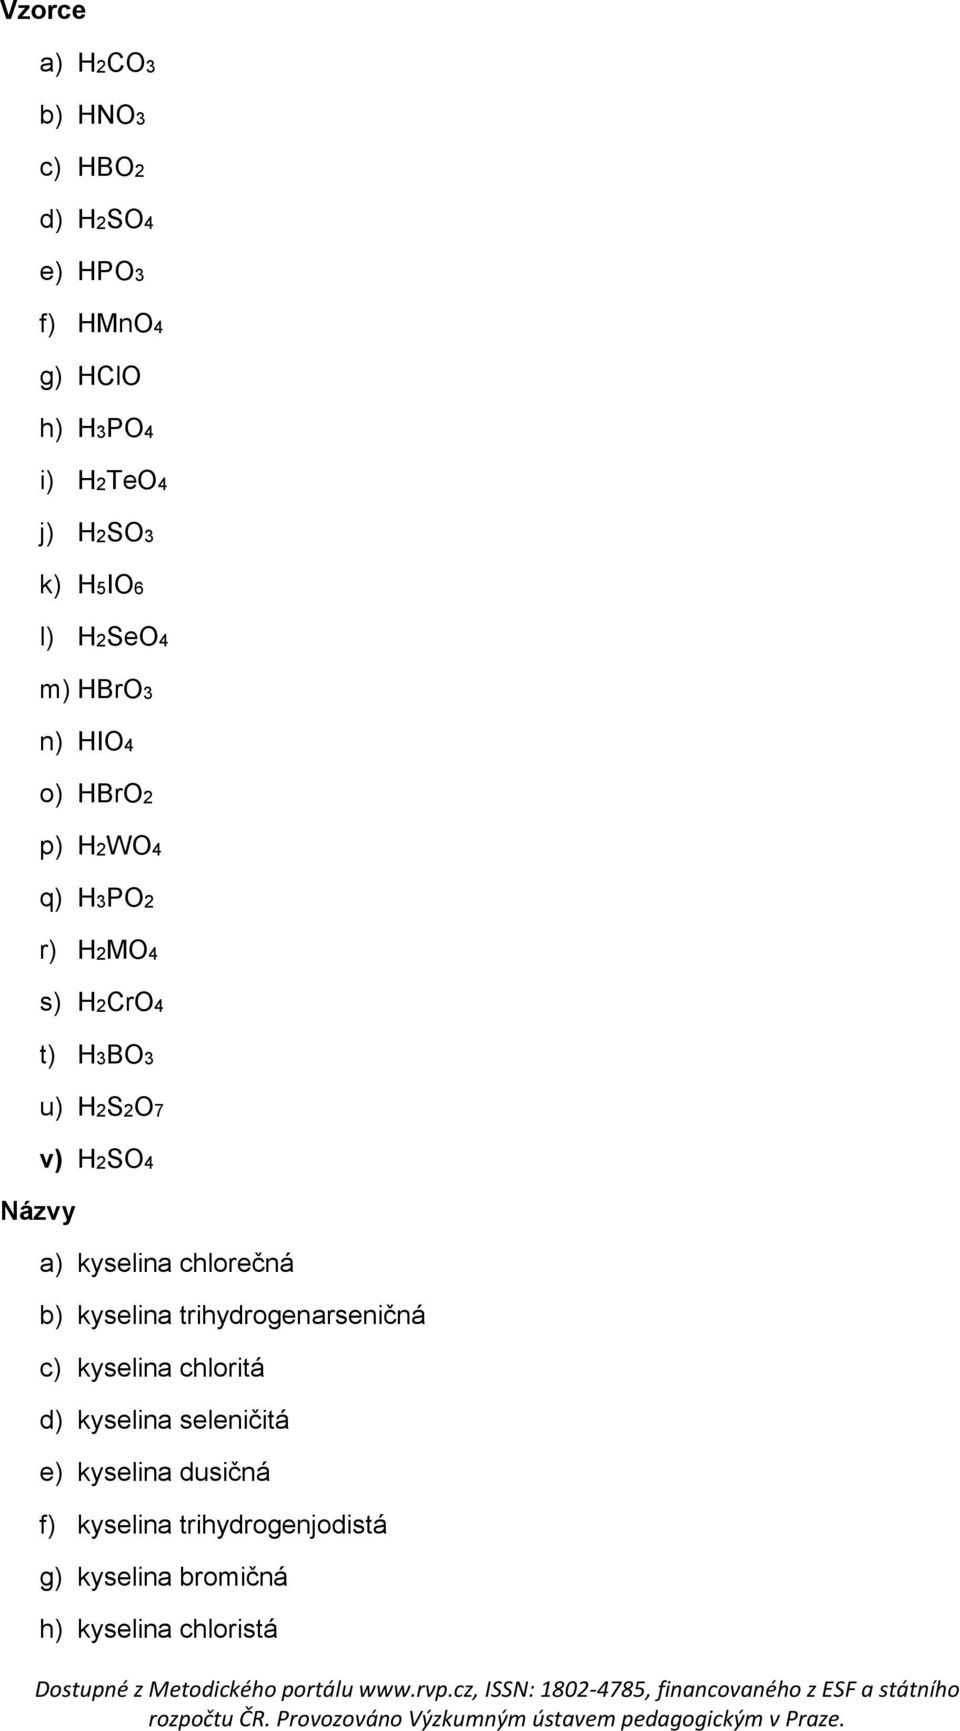 Názvy v) H2SO4 a) kyselina chlorečná b) kyselina trihydrogenarseničná c) kyselina chloritá d)